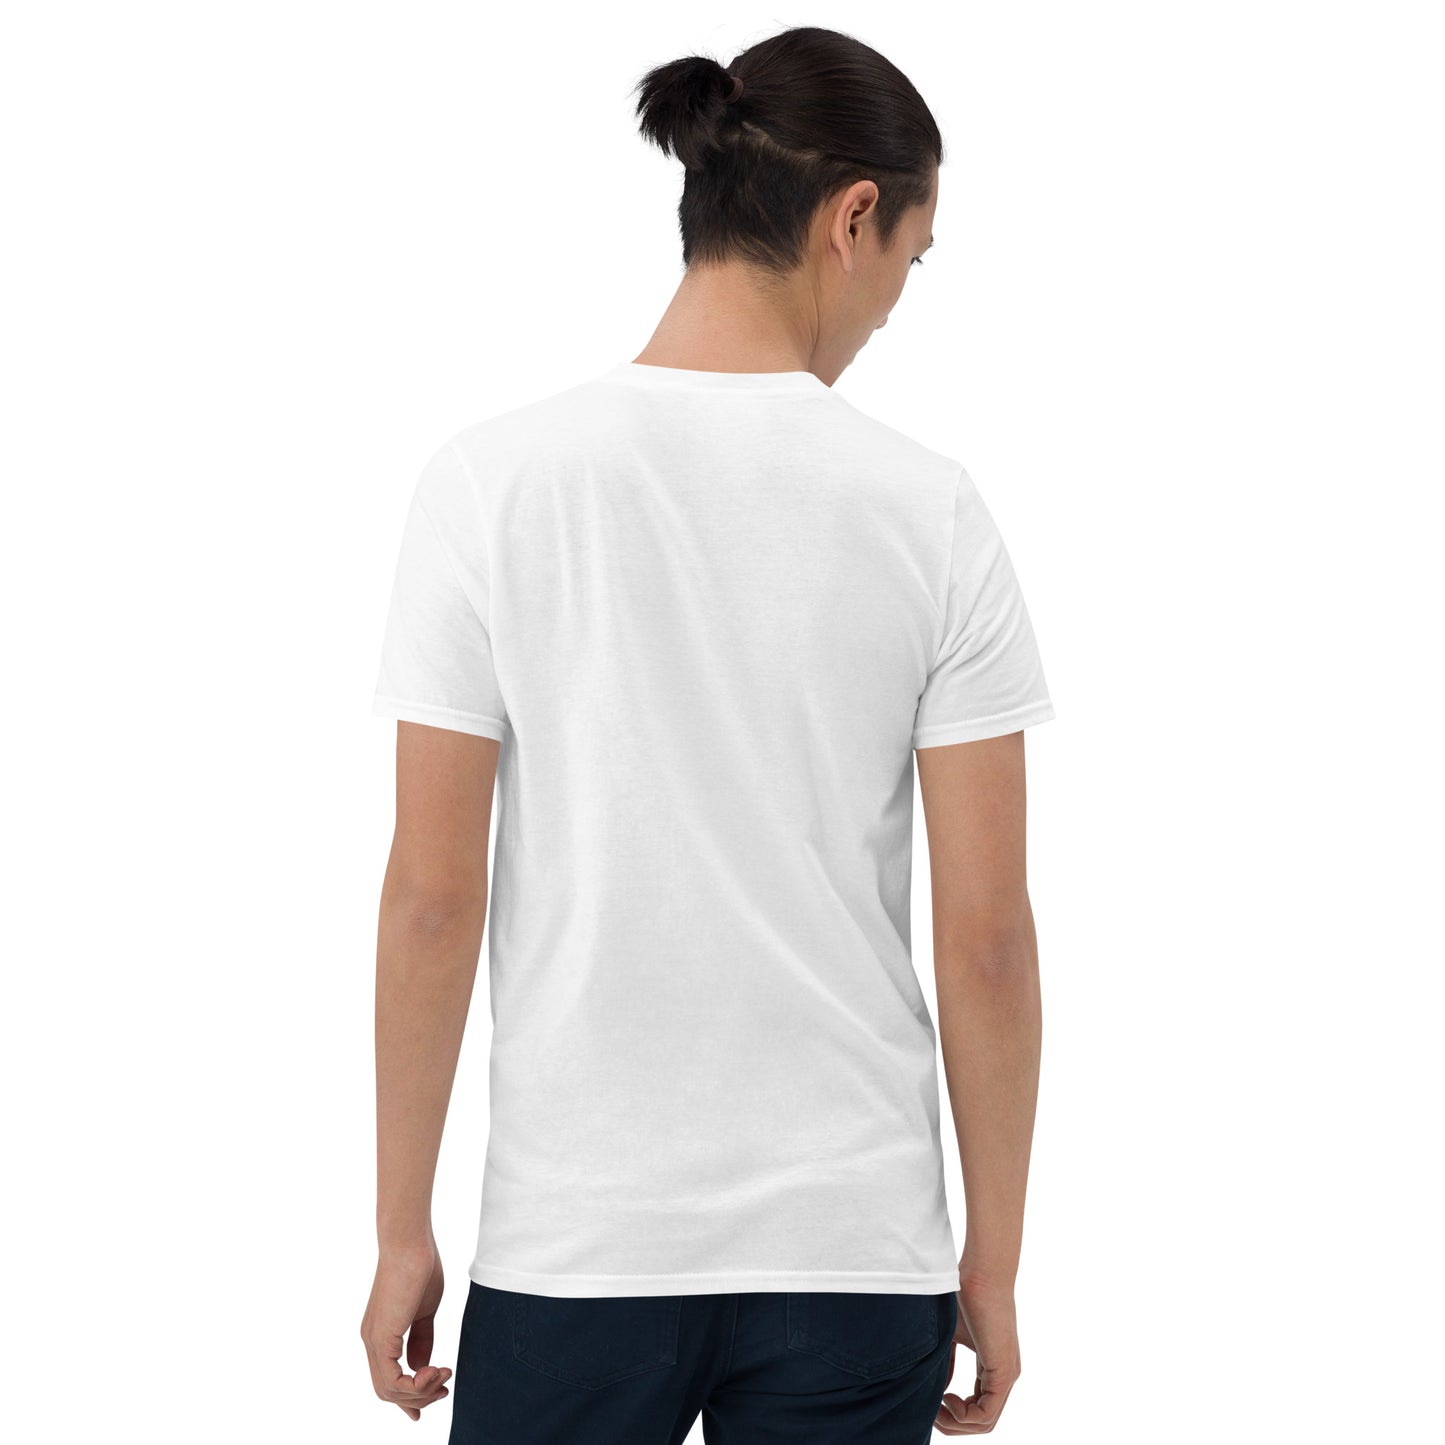 Friends Not Food - Short-Sleeve Unisex T-Shirt